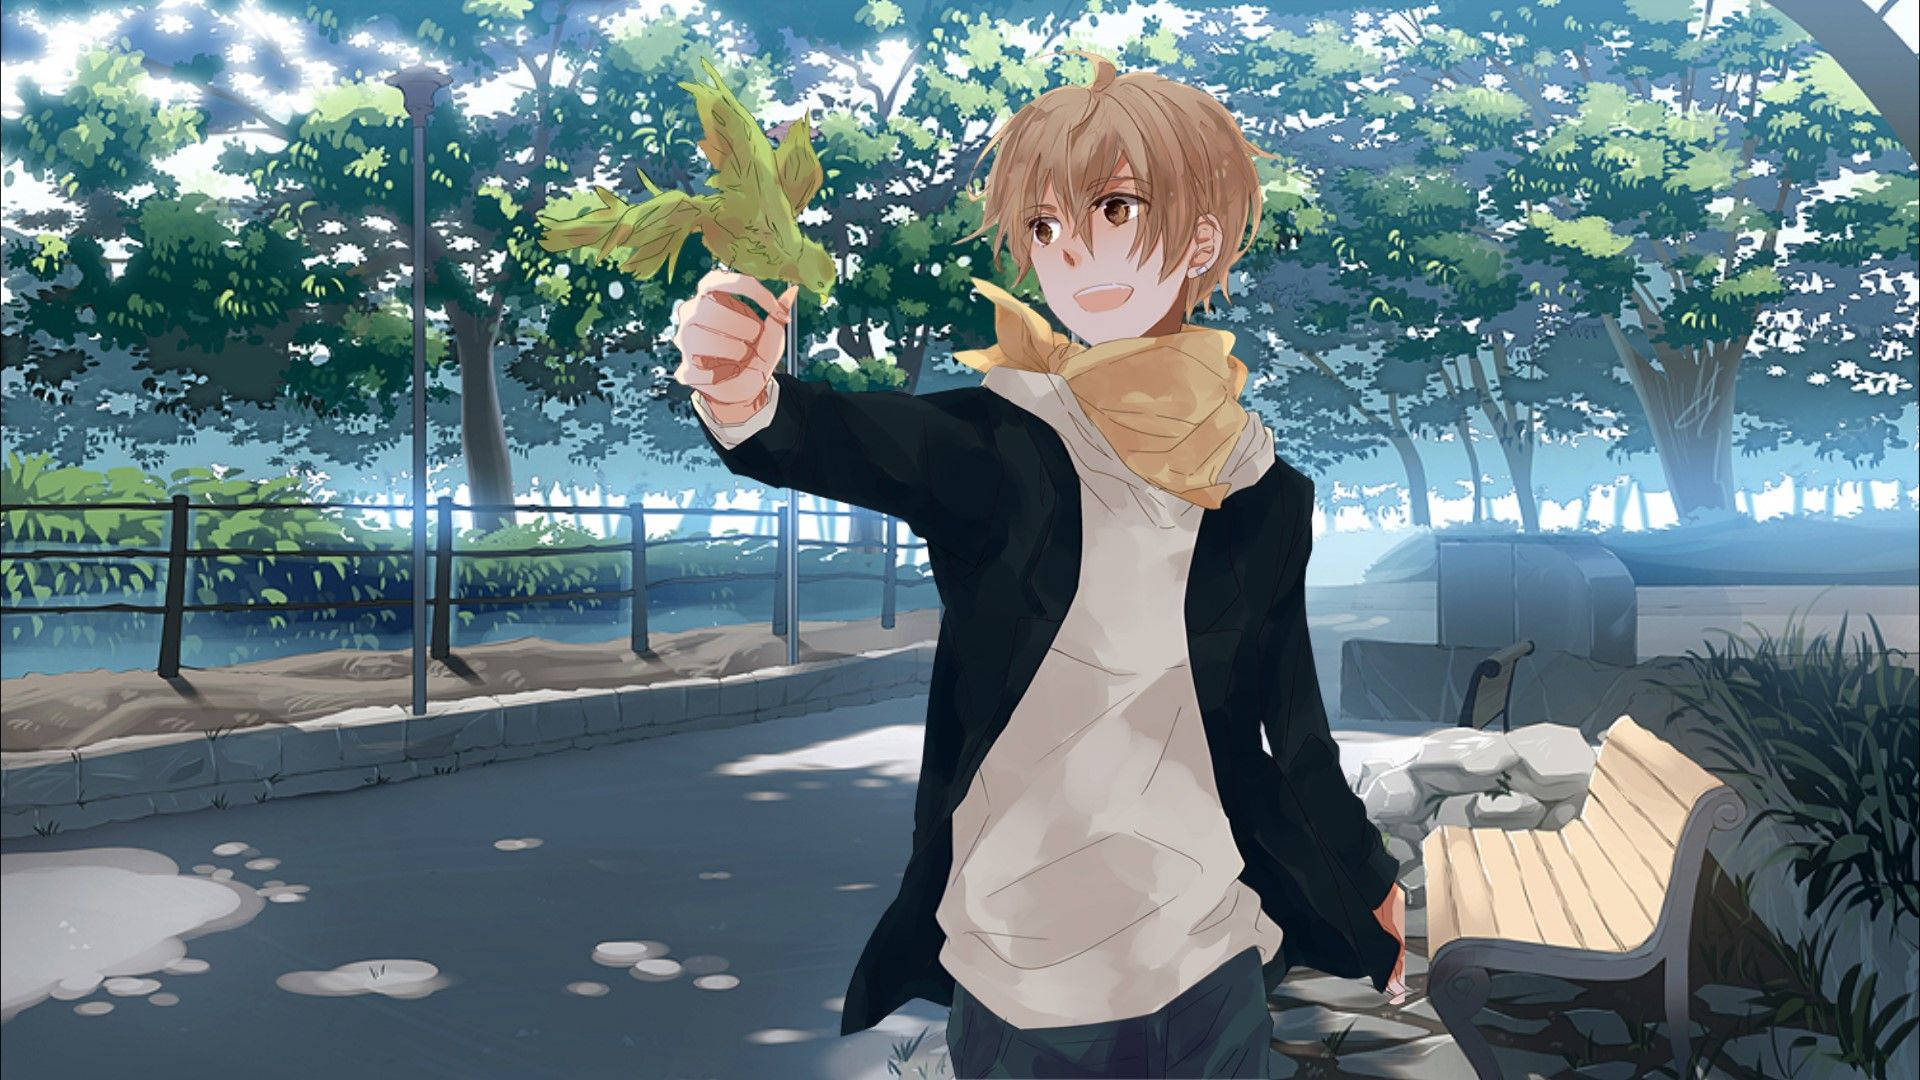 Cute Anime Boy In The Park